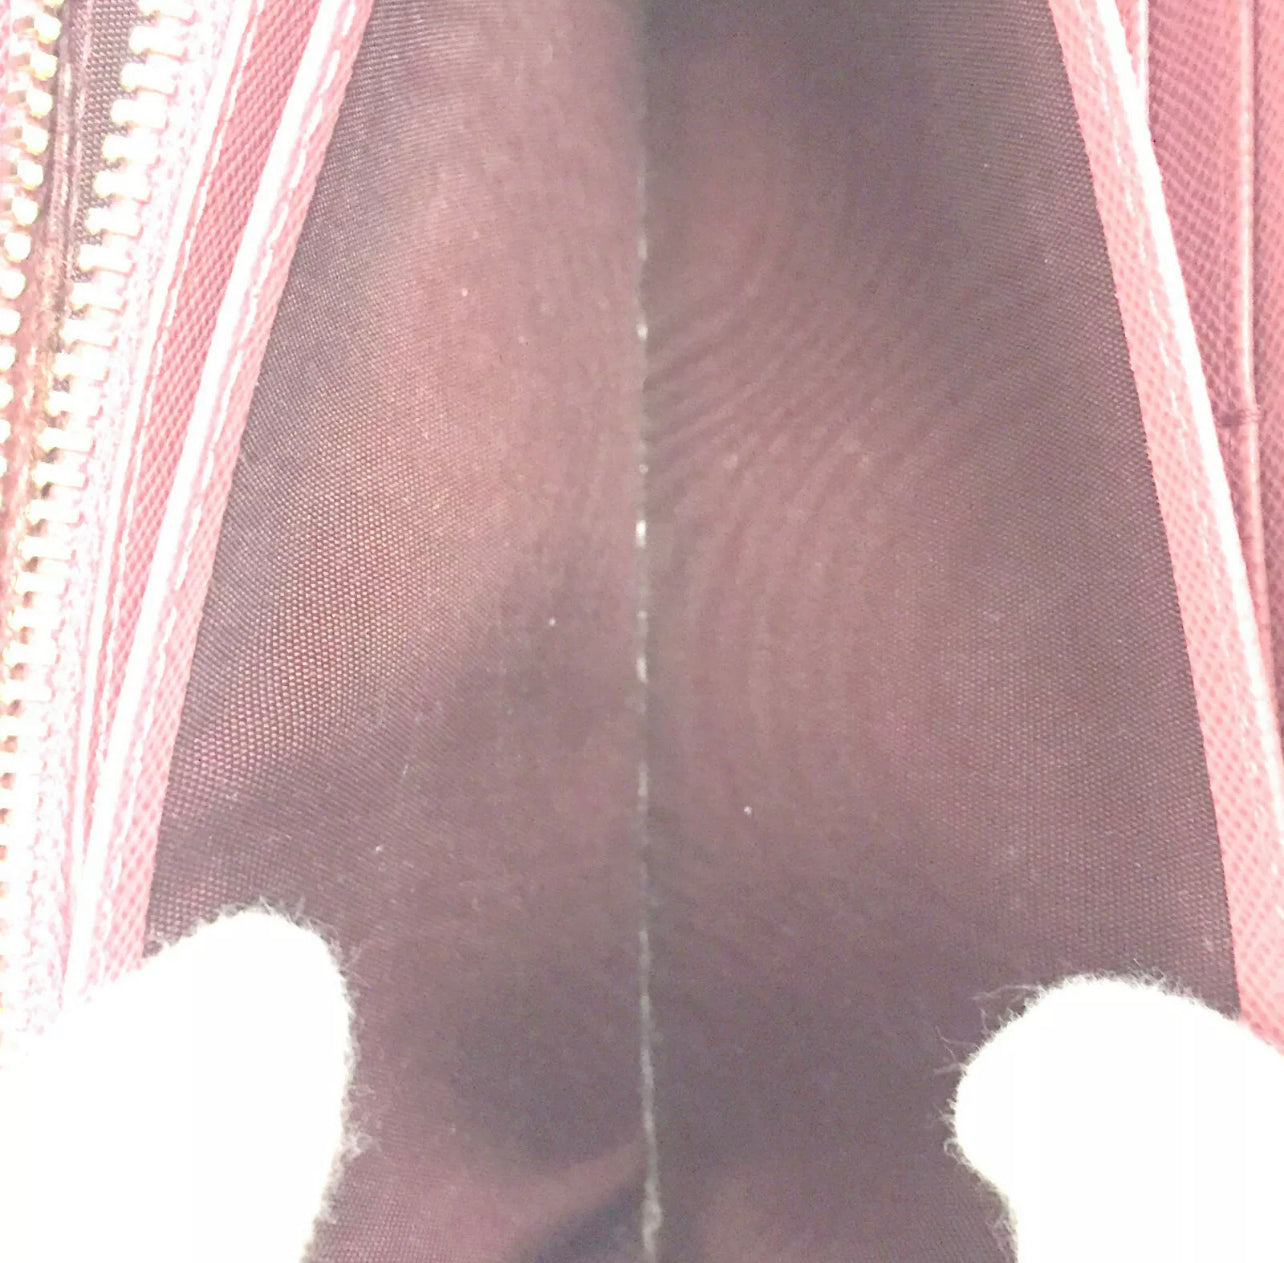 PRELOVED PRADA Saffiano Pink Leather Zip Around Long Wallet 082821 3HBTWMR FLASH SALE